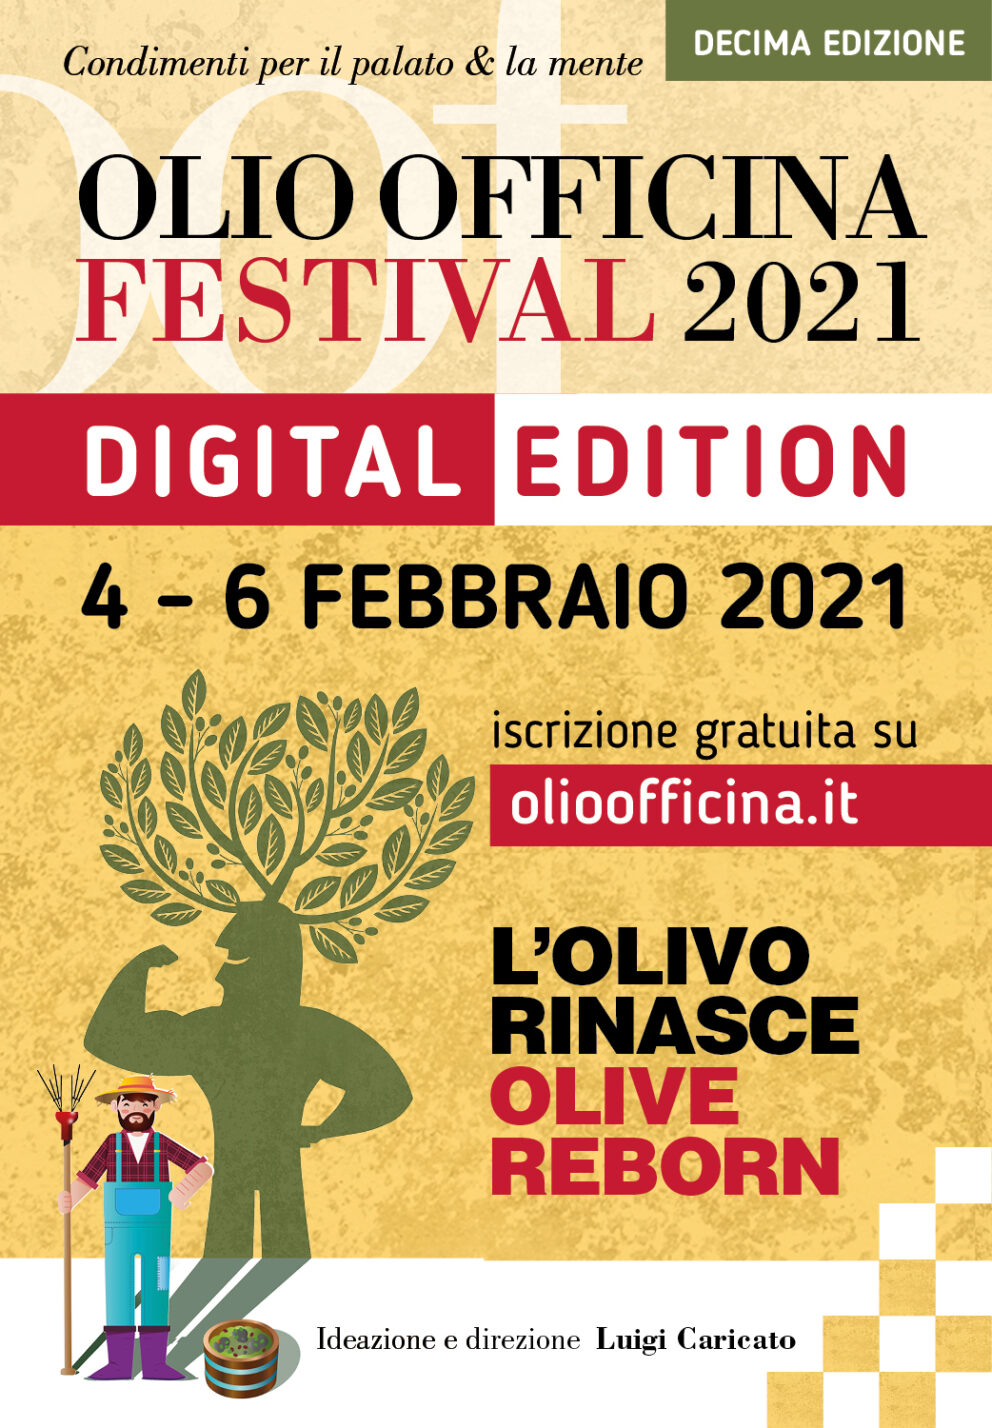 La decima edizione di Olio Officina Festival sarà in versione digitale